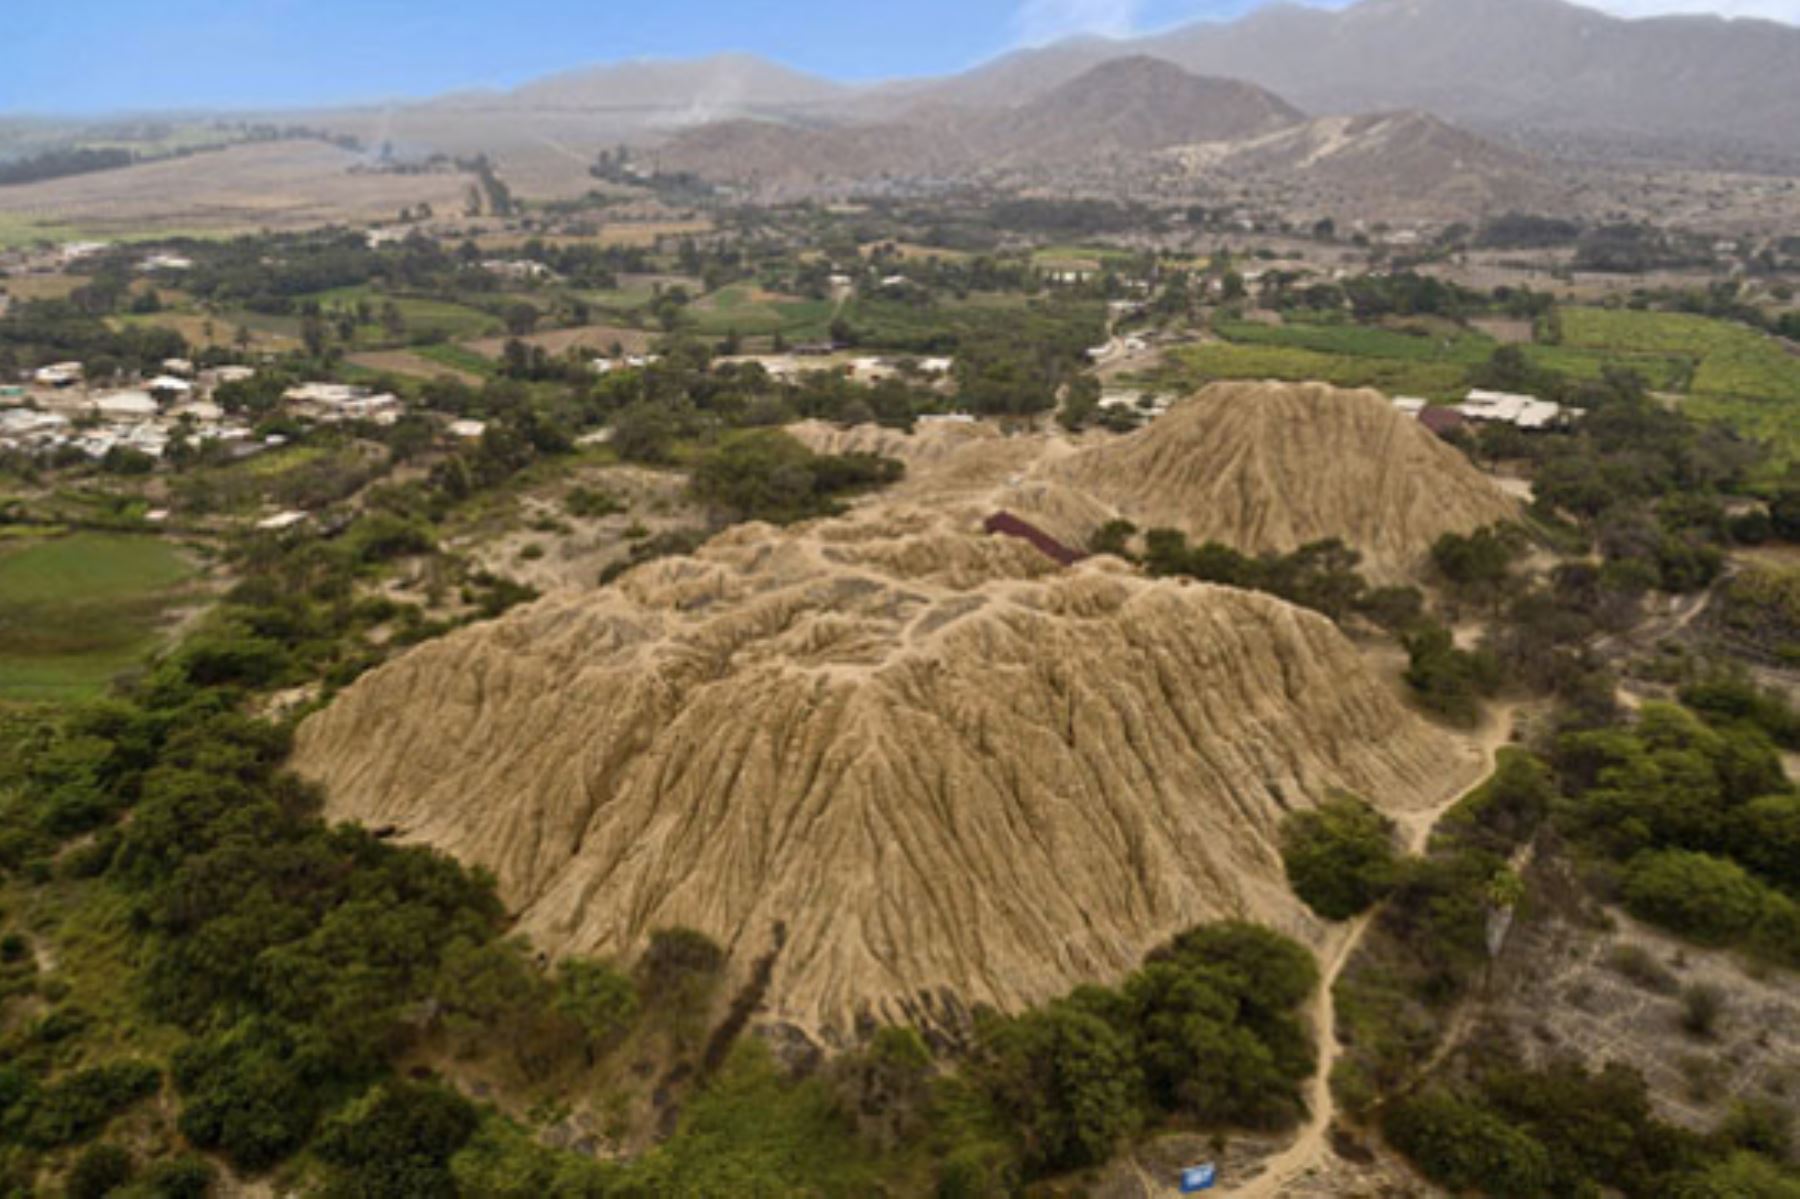 Hasta el 15 de noviembre será gratuito el ingreso a las zonas arqueológicas de los museos de sitio Túcume y Huaca Rajada-Sipán, en la región Lambayeque. Foto: ANDINA/Difusión